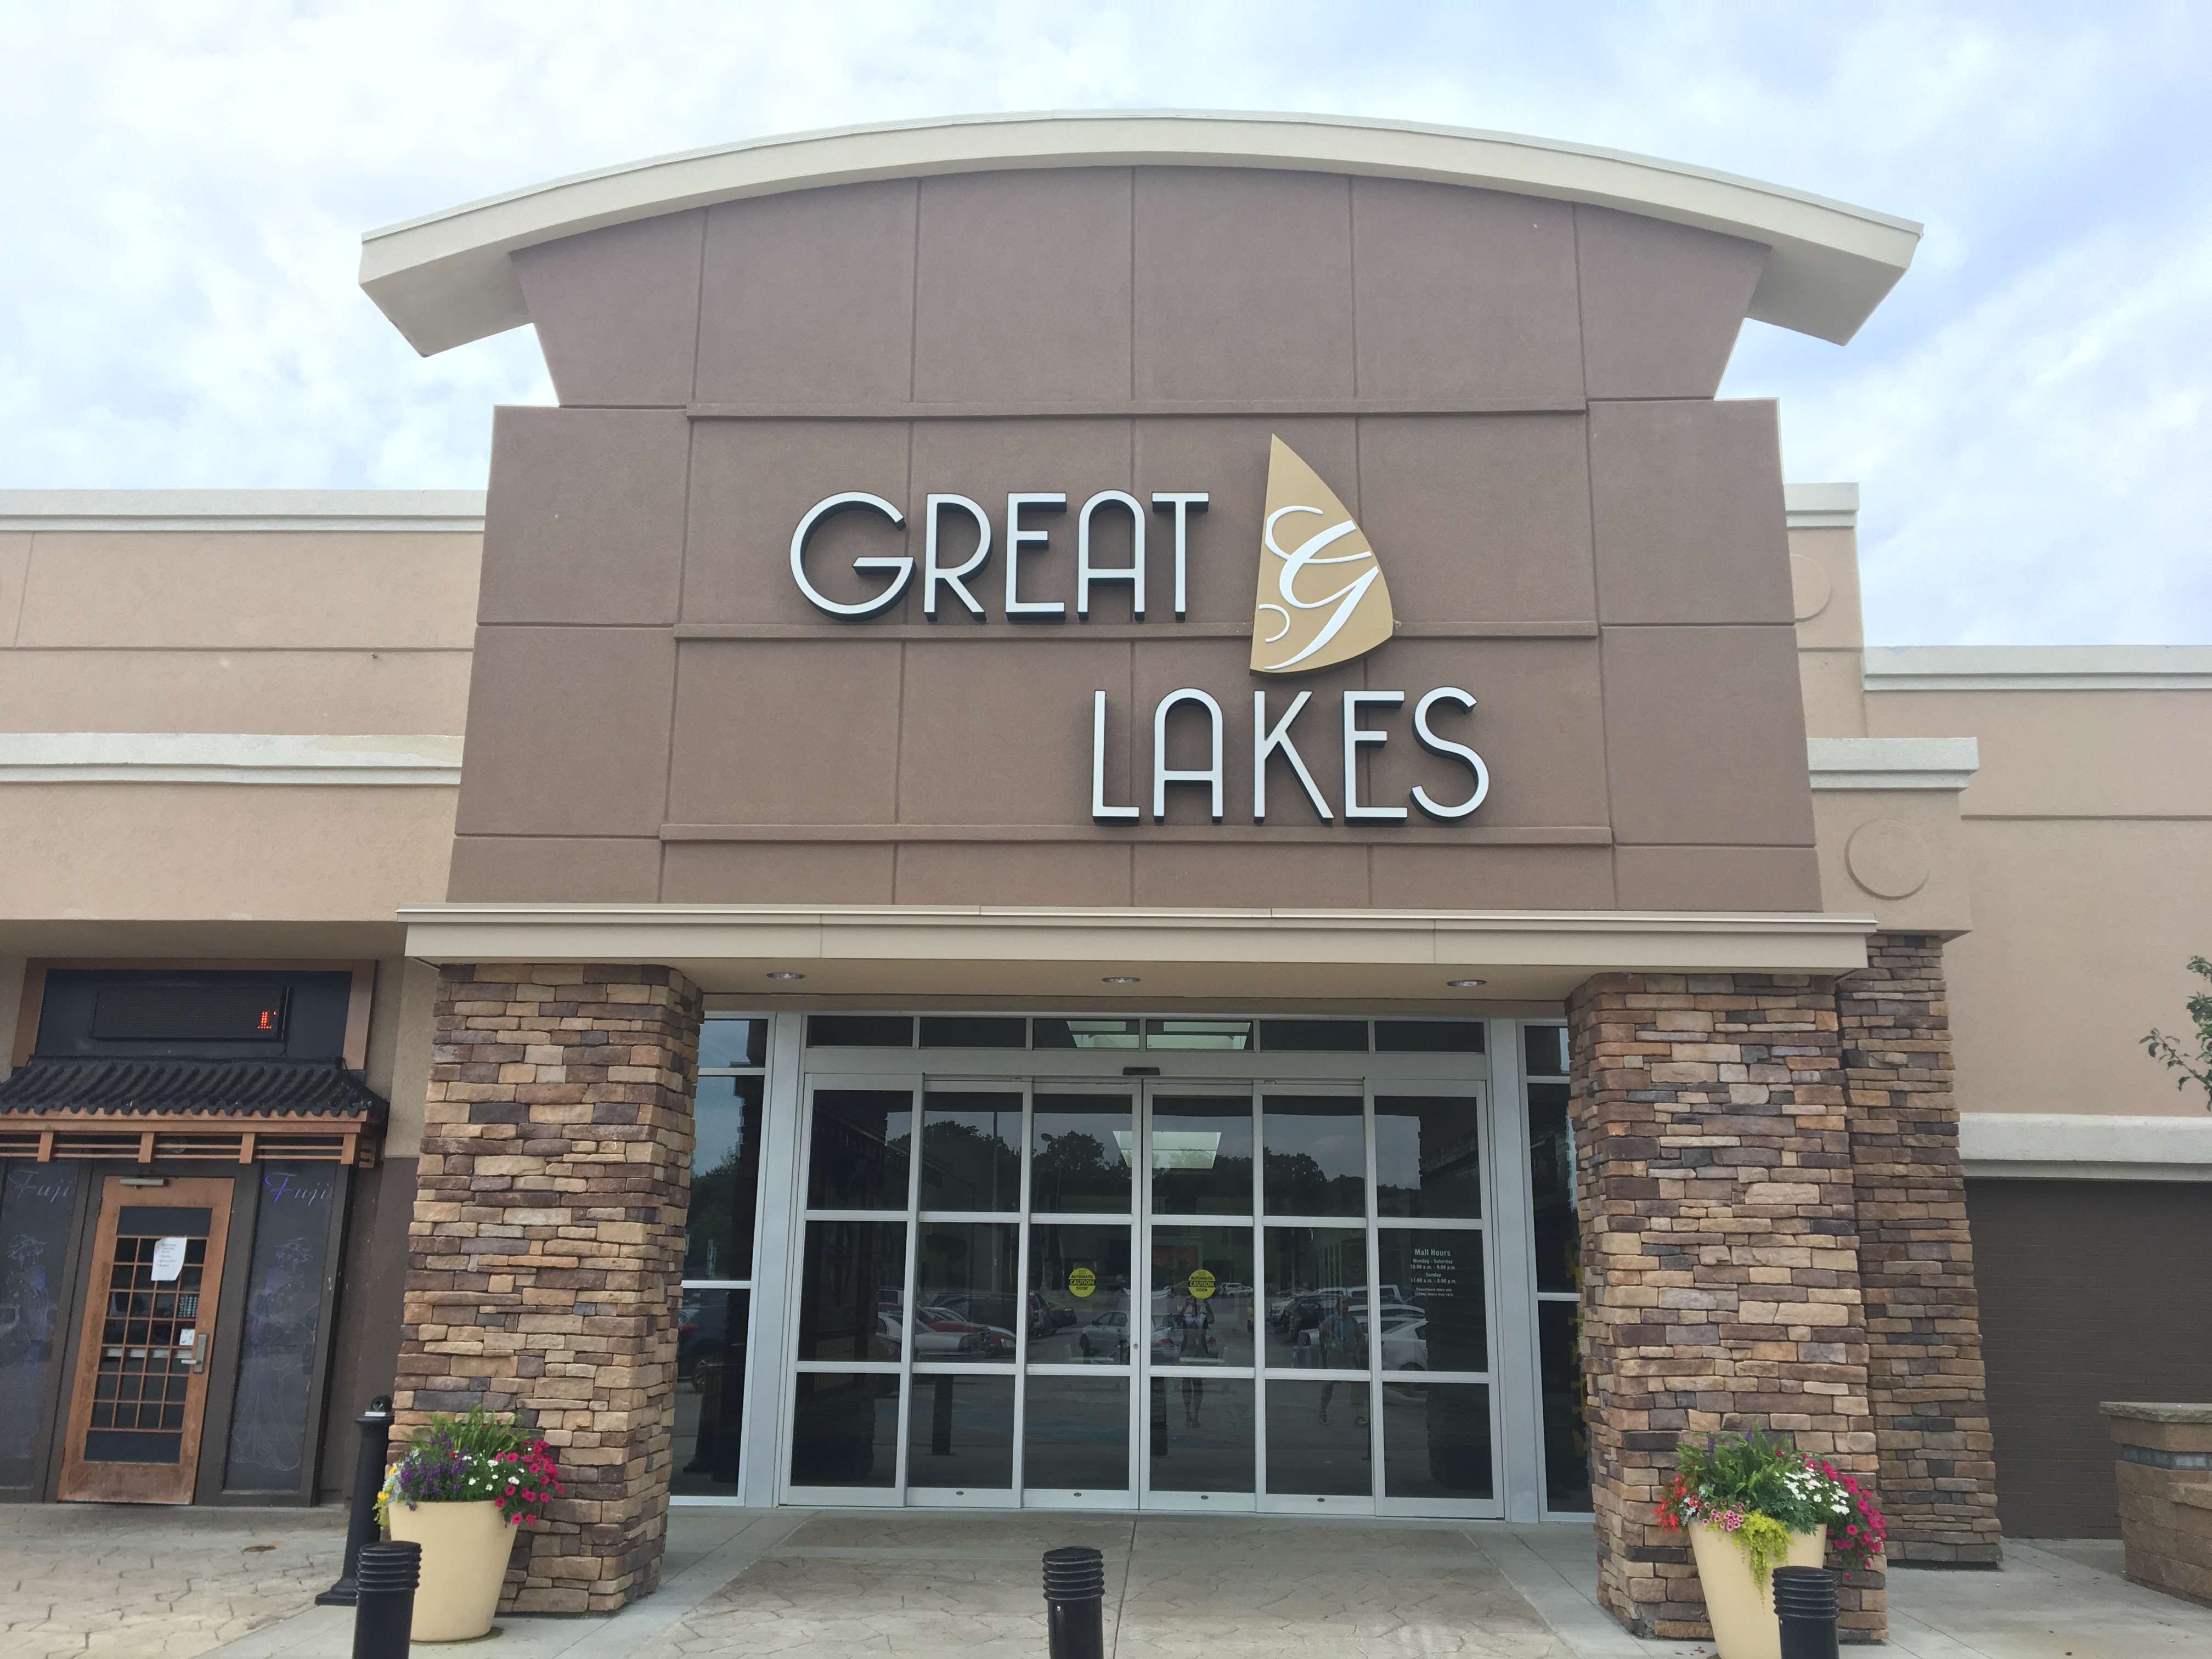 Great lakes mall malls shopping wkyc lake